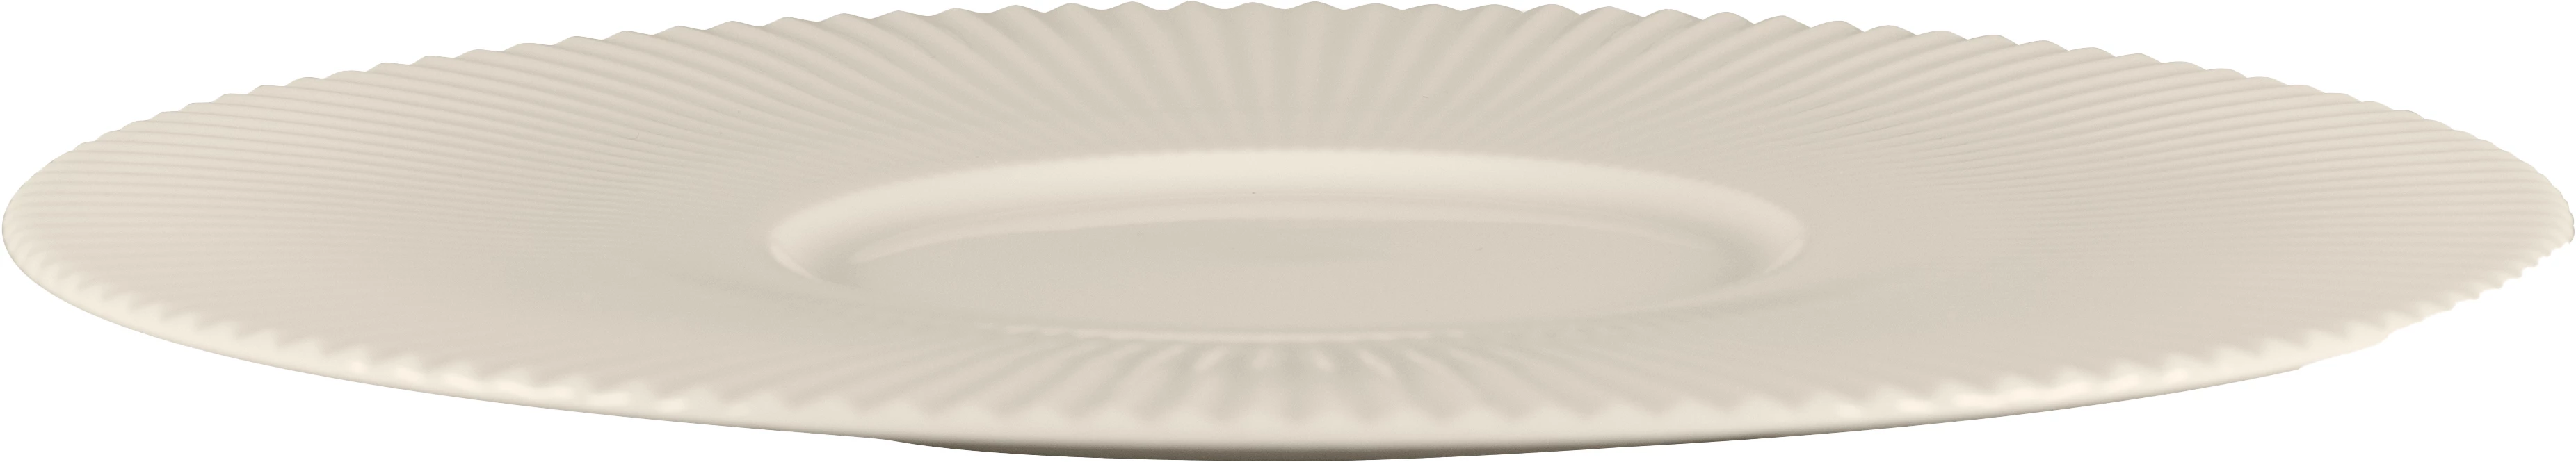 RAK Spectra flad tallerken med bred fane, ø29,2 cm